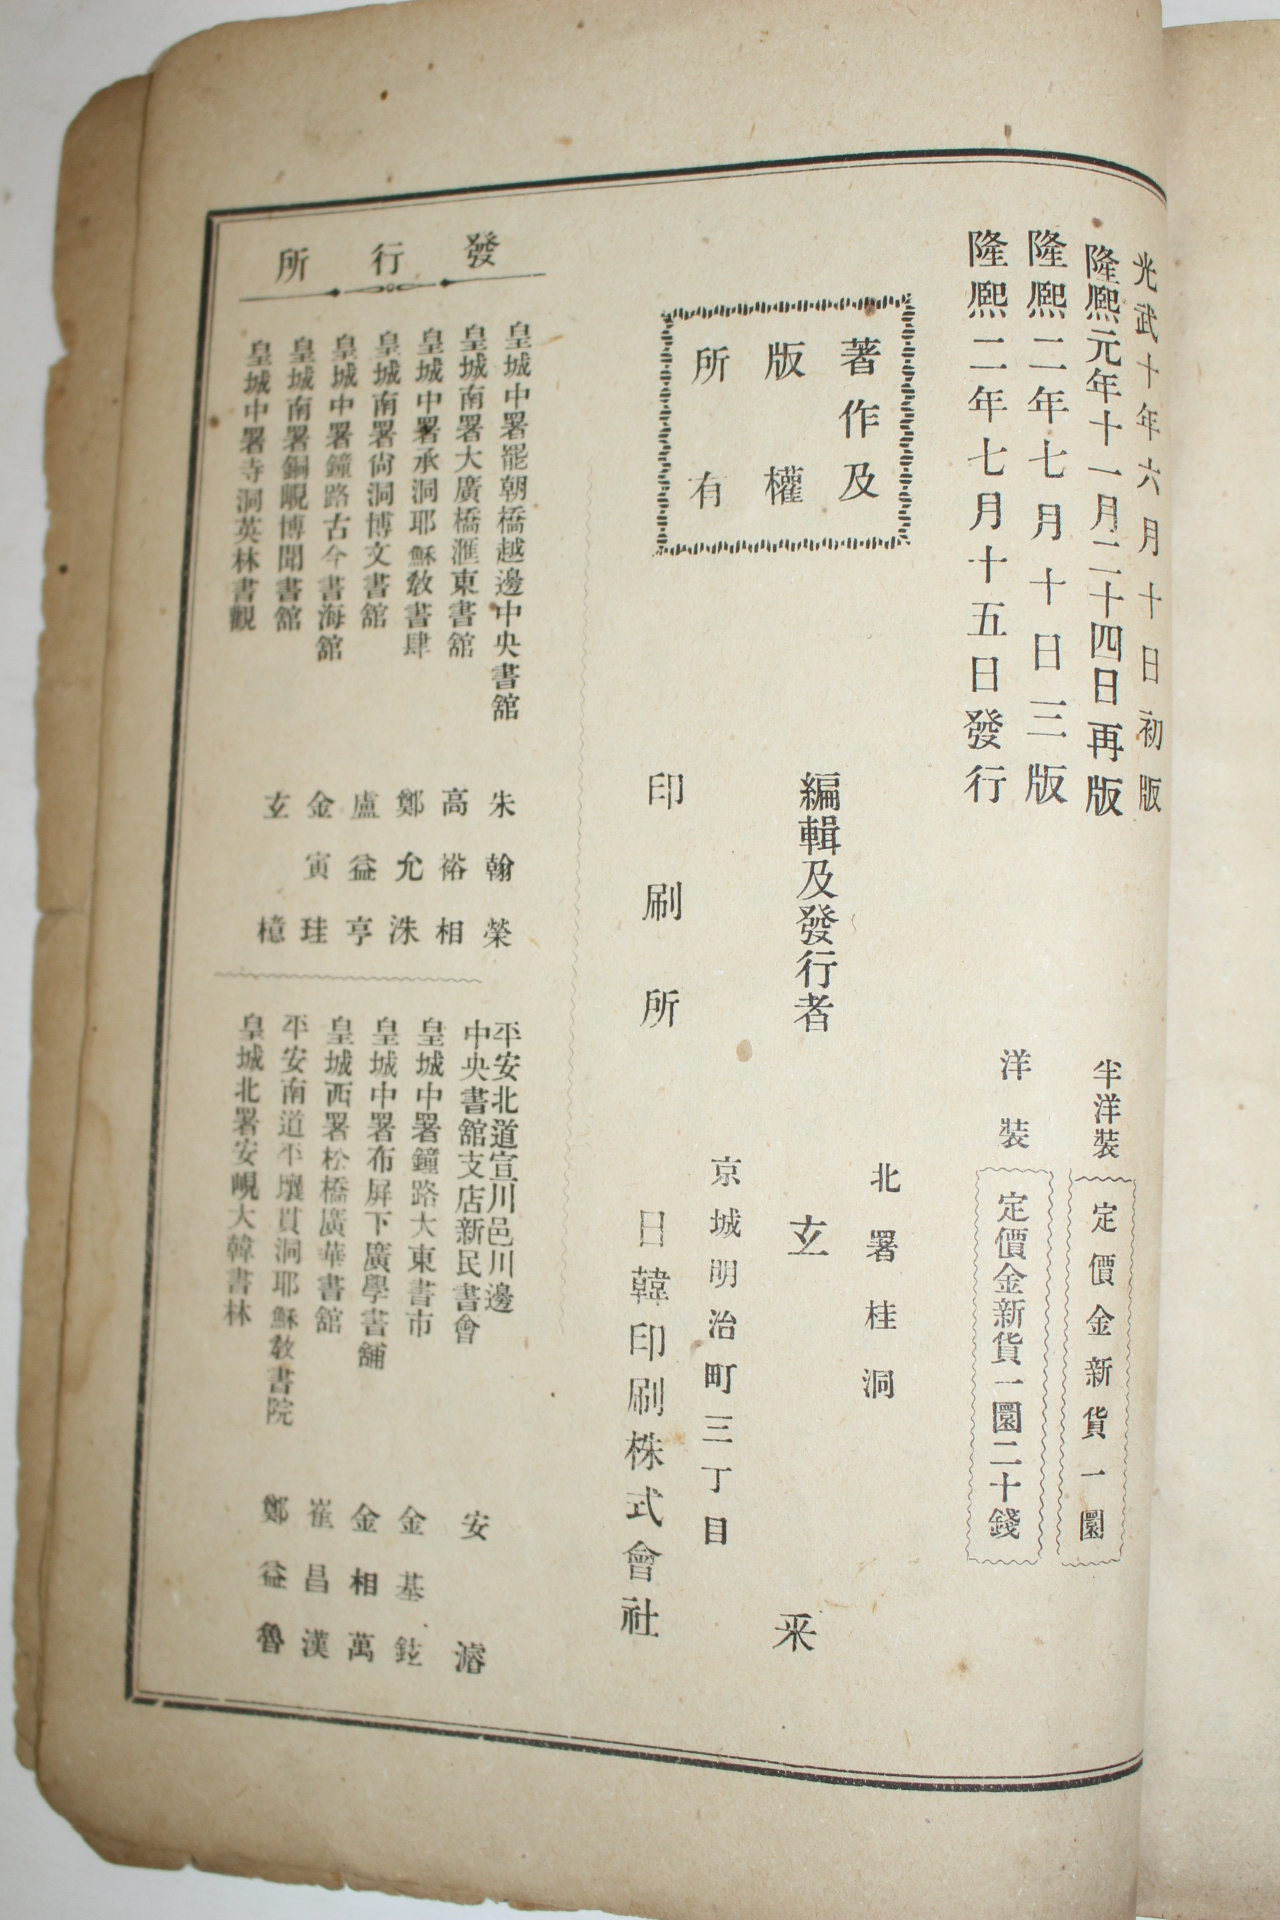 1908년(융희2년) 중등교과 동국사략(東國史略)하권 1책